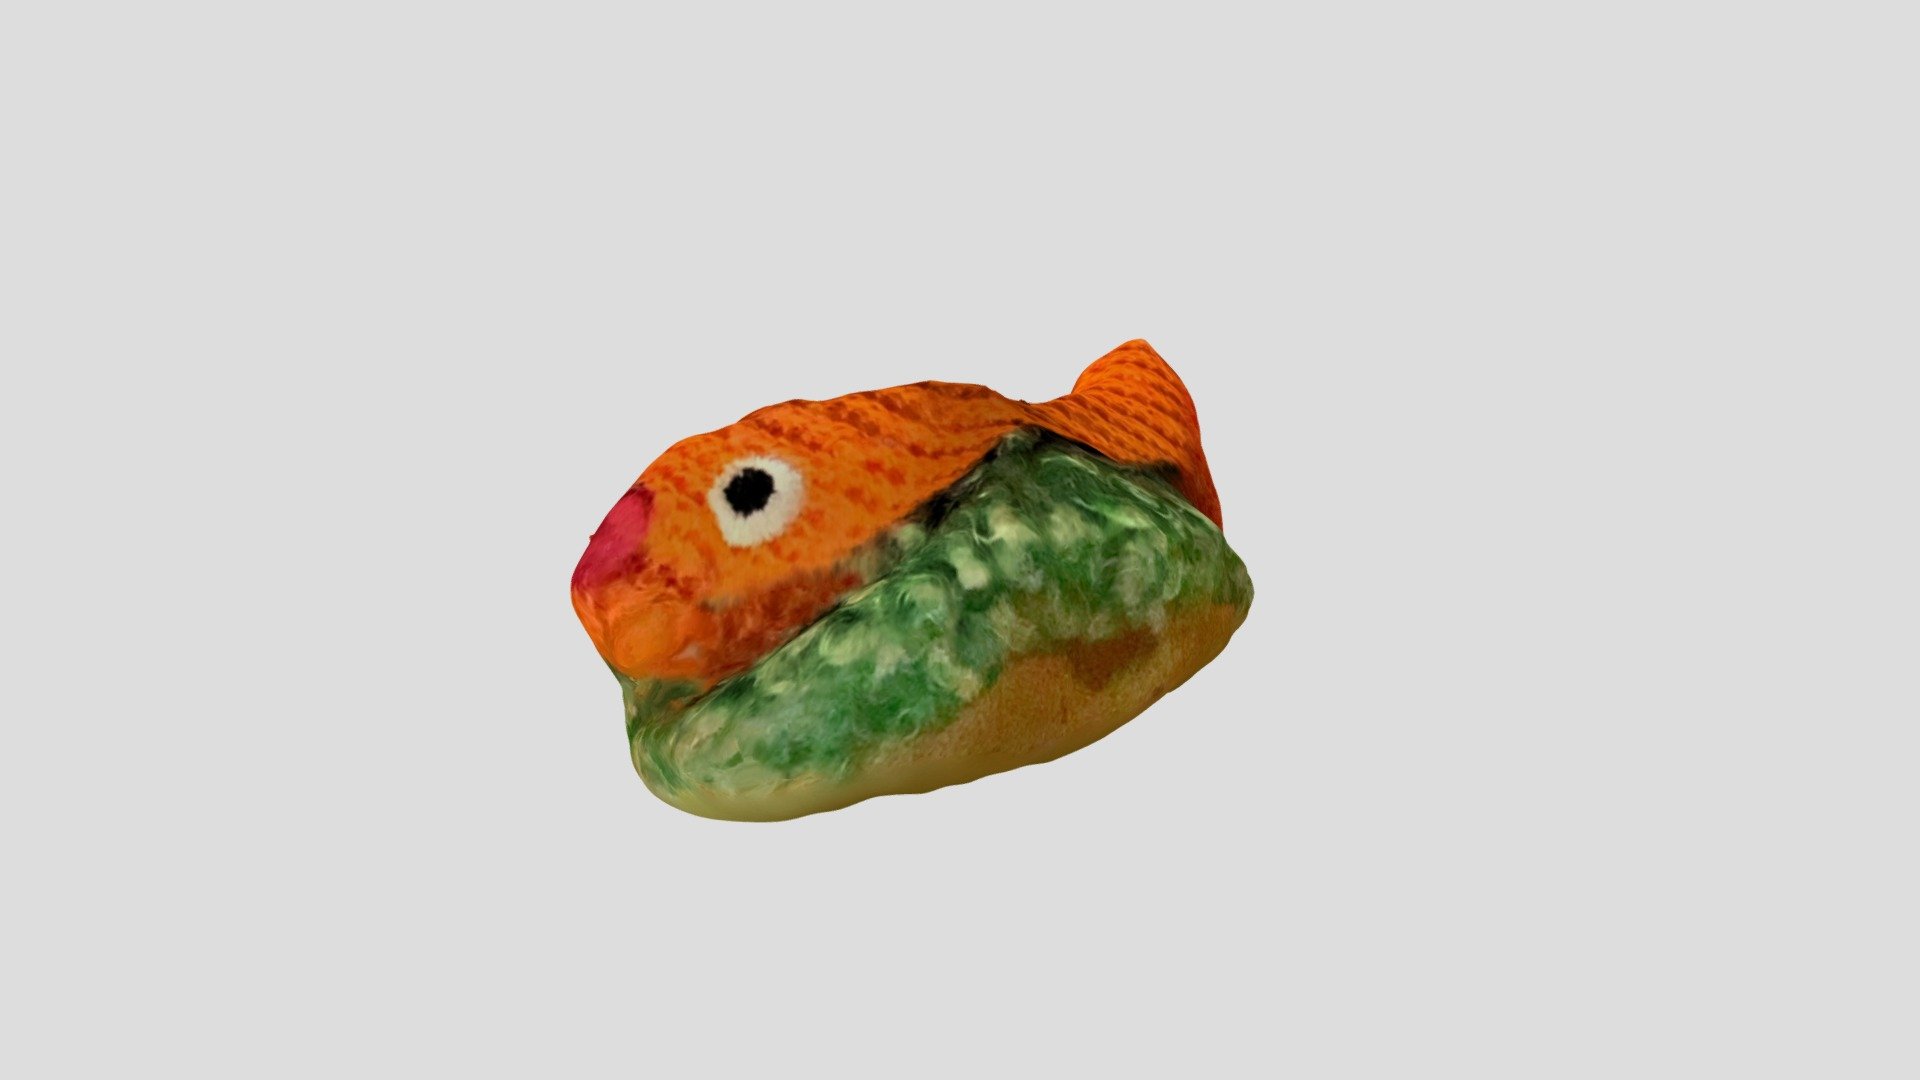 Fish Taco cat toy